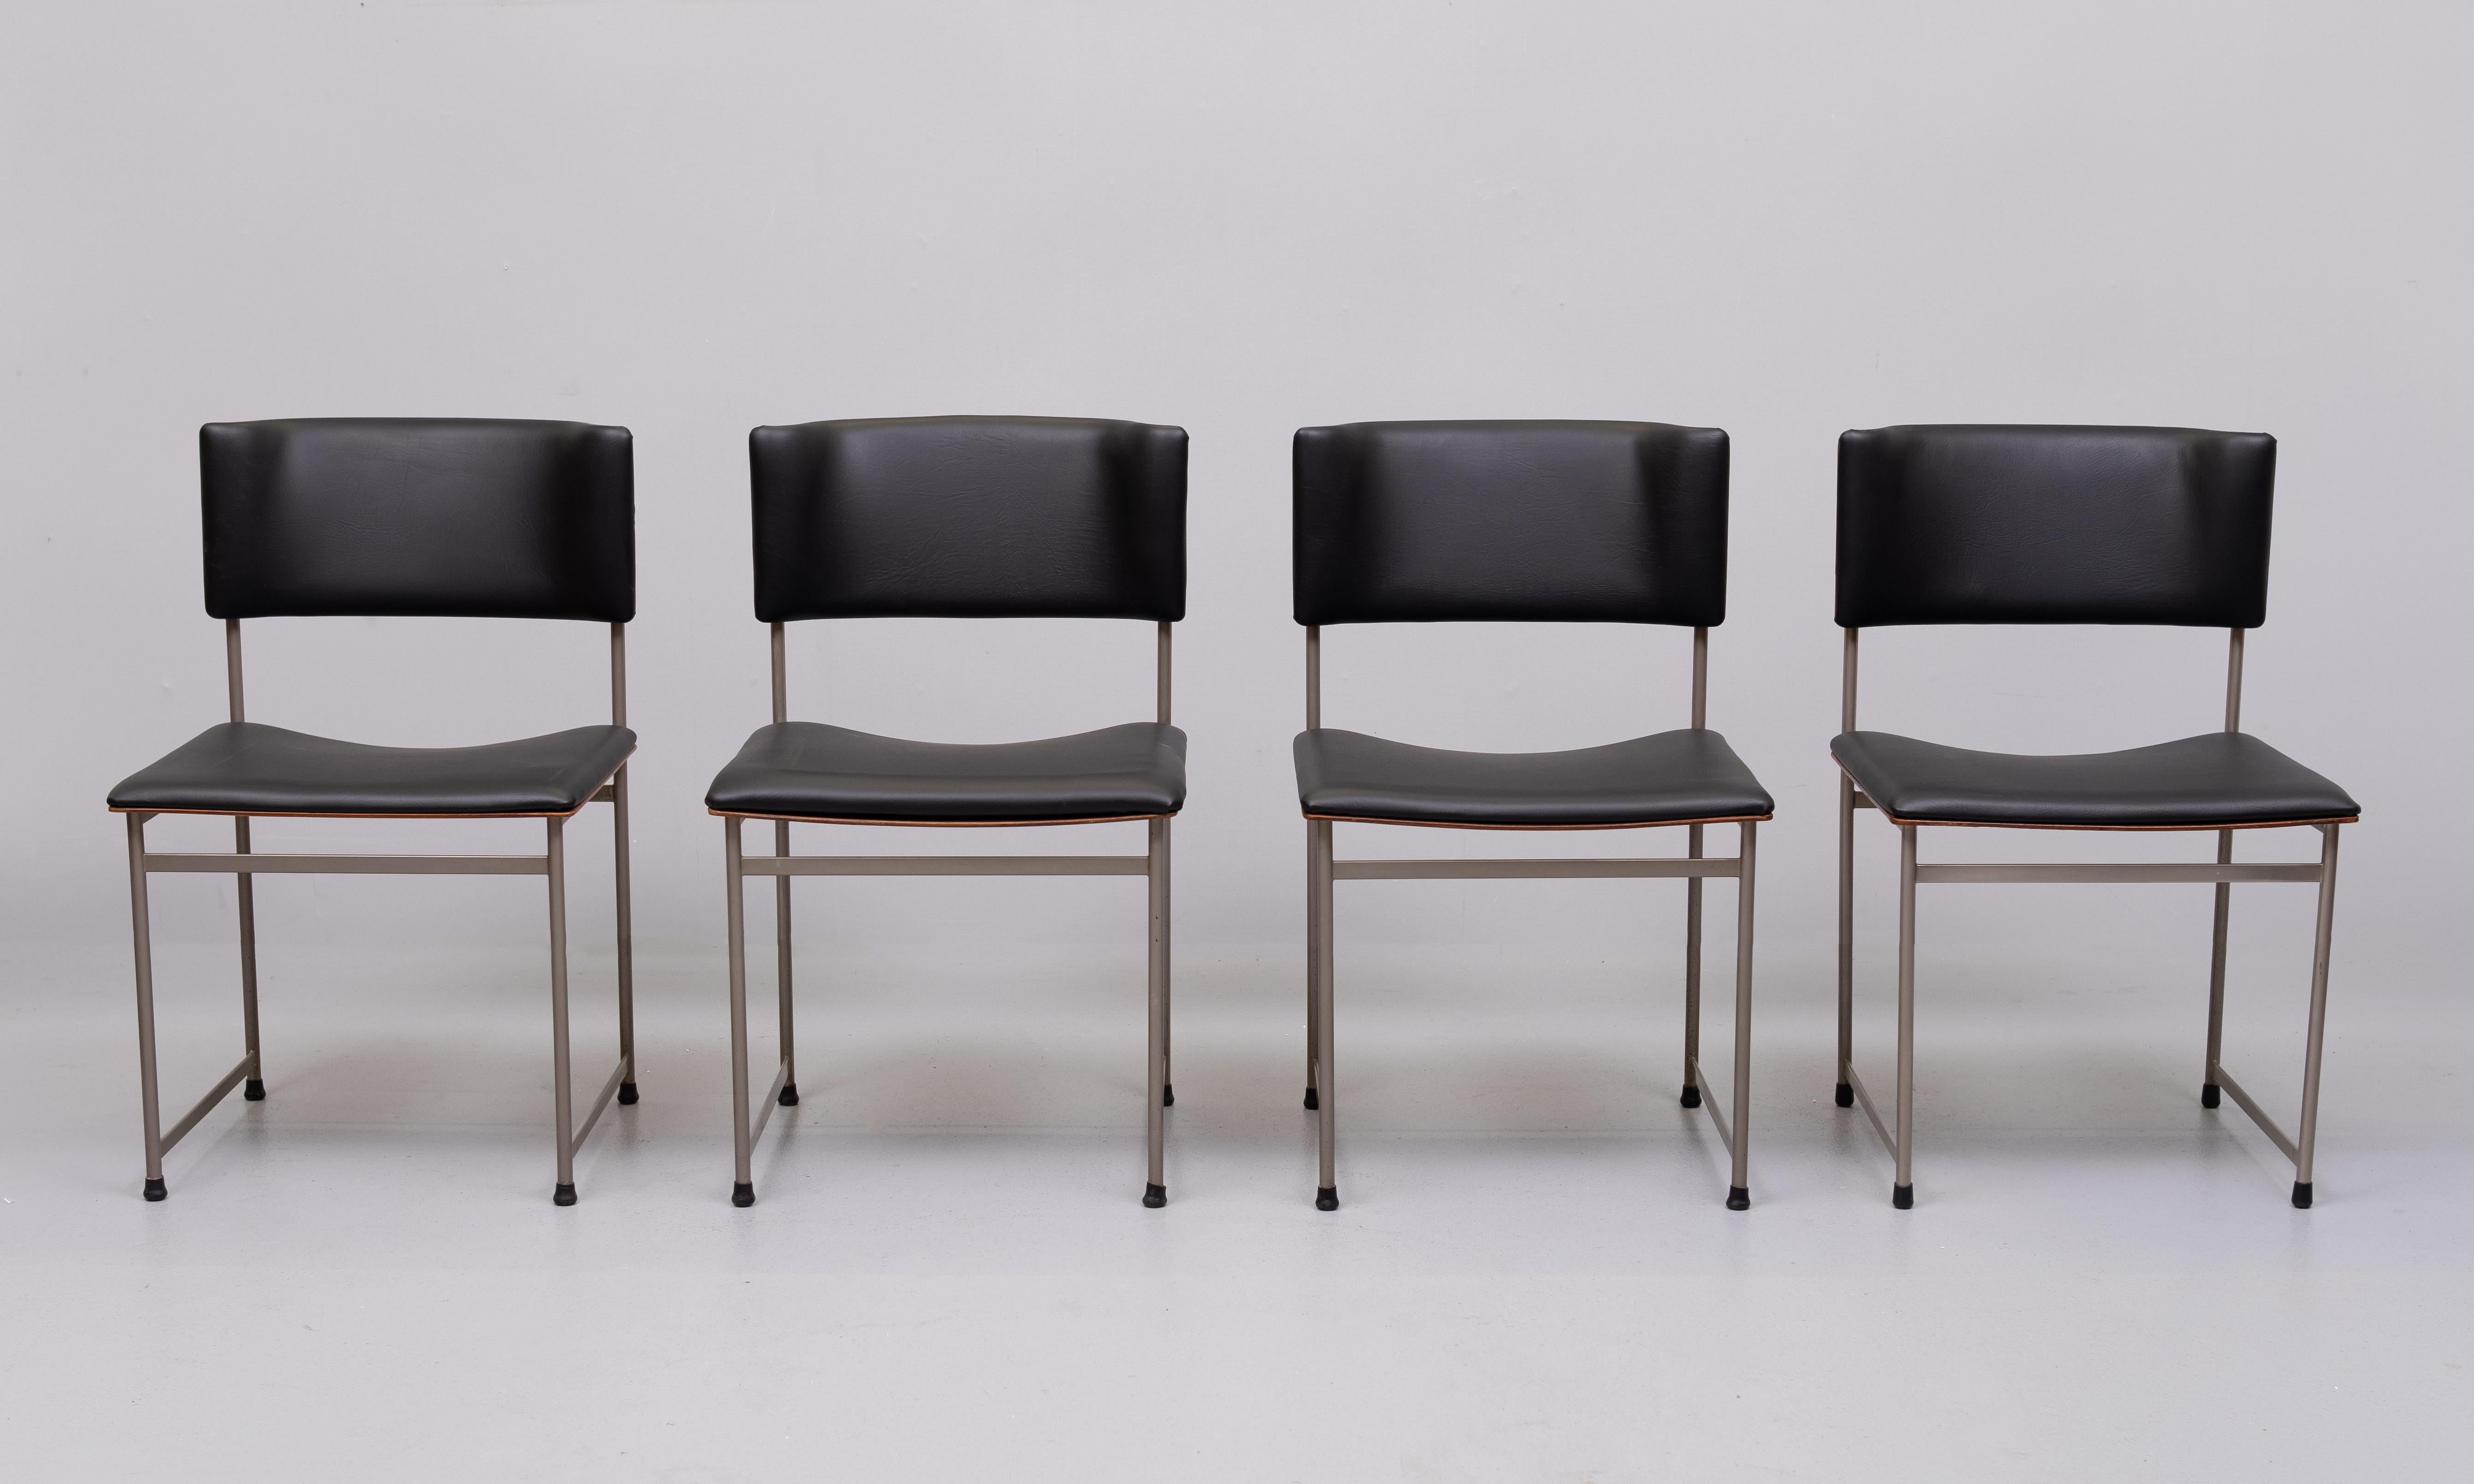 Luxuriöse Vintage-Stühle für den Esstisch, Typ SM08, entworfen von Cees Braakman und hergestellt von Pastoe, 1950er Jahre. Die Stühle haben ein schlankes Stahlgestell (vernickelt) mit einer Rückenlehne aus geschwungenem Palisanderfurnier und sind